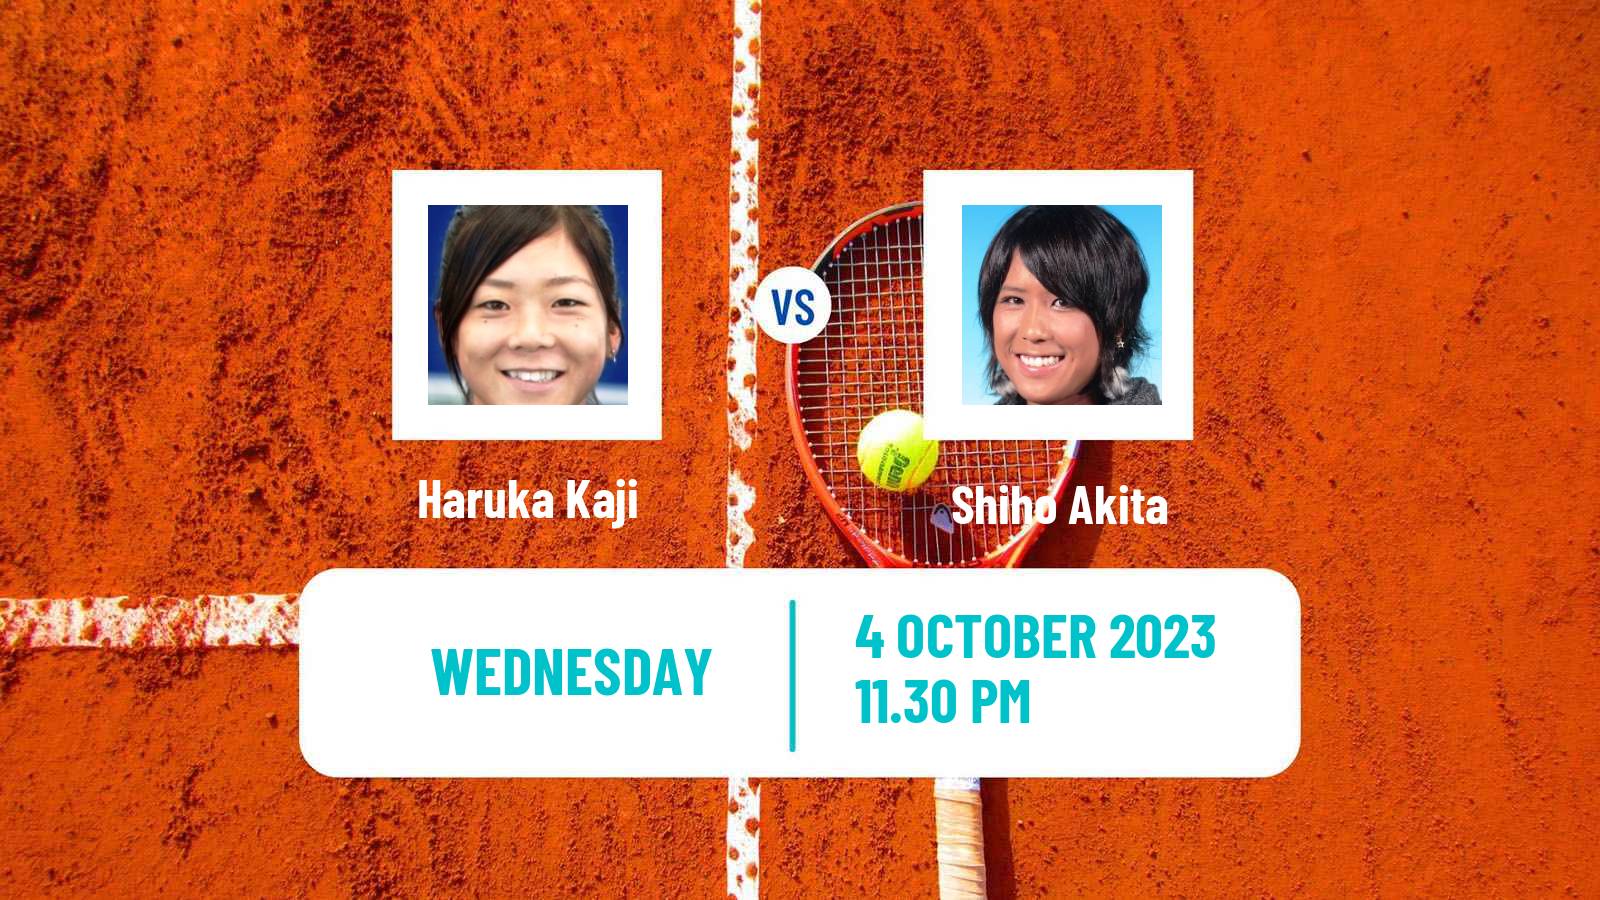 Tennis ITF W25 Makinohara Women Haruka Kaji - Shiho Akita